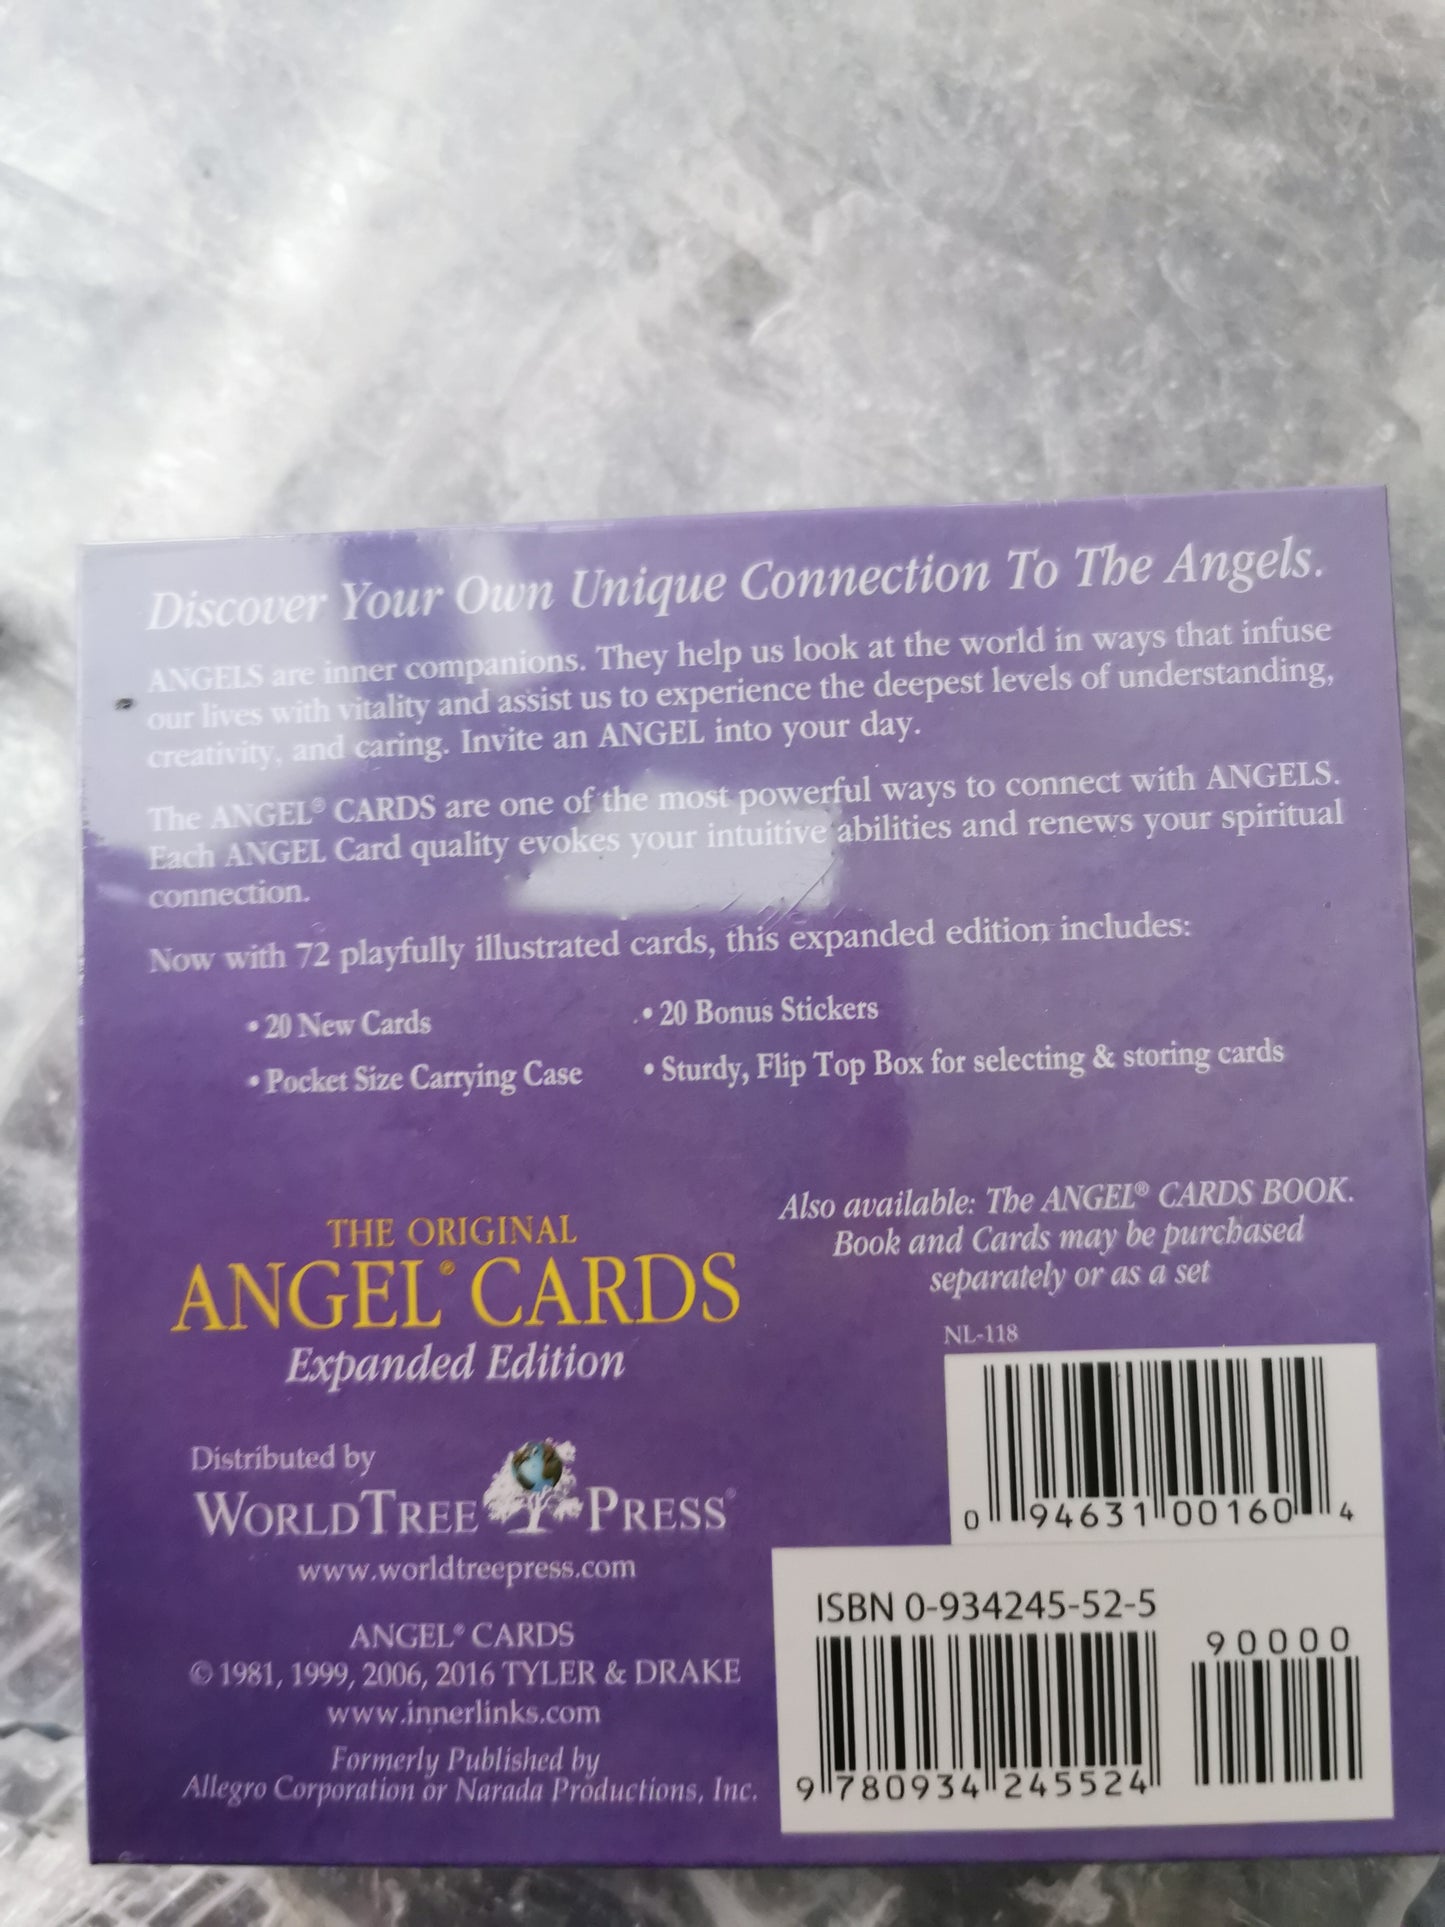 The original Angel cards